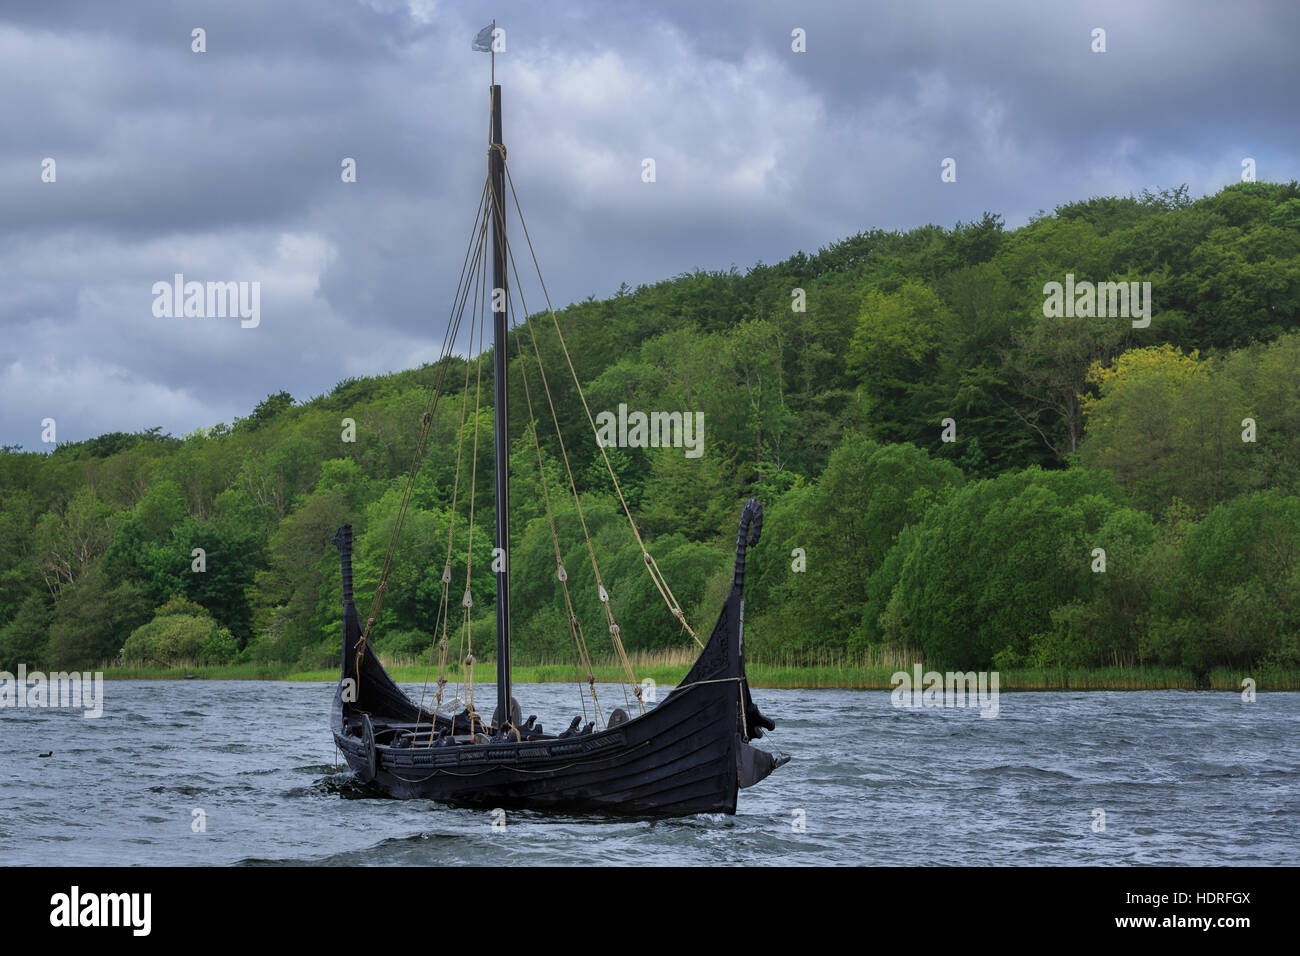 La réplique bateau viking - Jellingorm Faarup, Lac, Vejle, Danemark, Jylland Banque D'Images